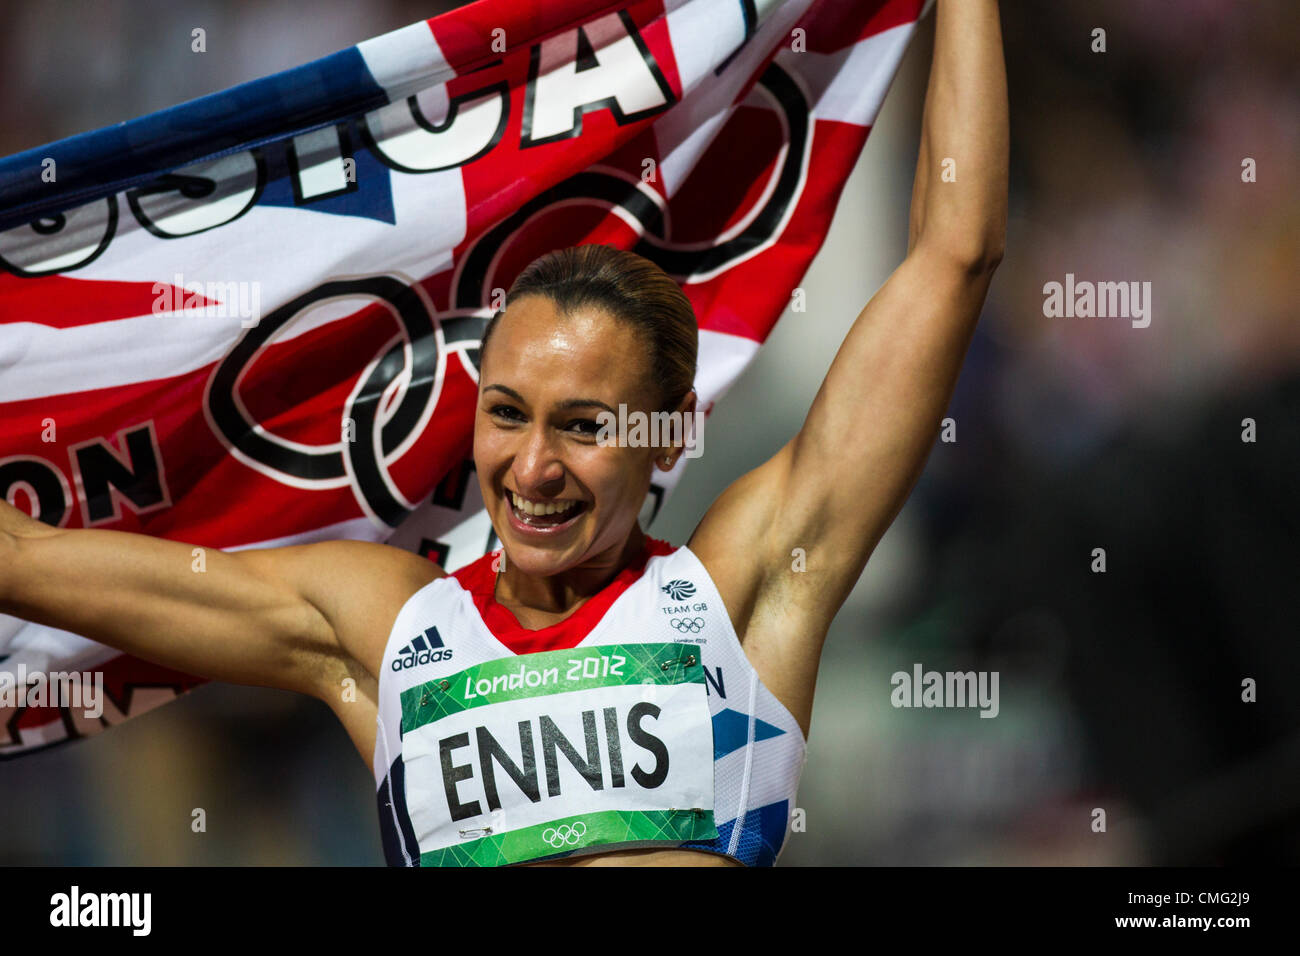 Jessica Ennis (GBR) ganador de medalla de oro en el heptathlon en el verano de los Juegos Olímpicos de Londres 2012 Foto de stock